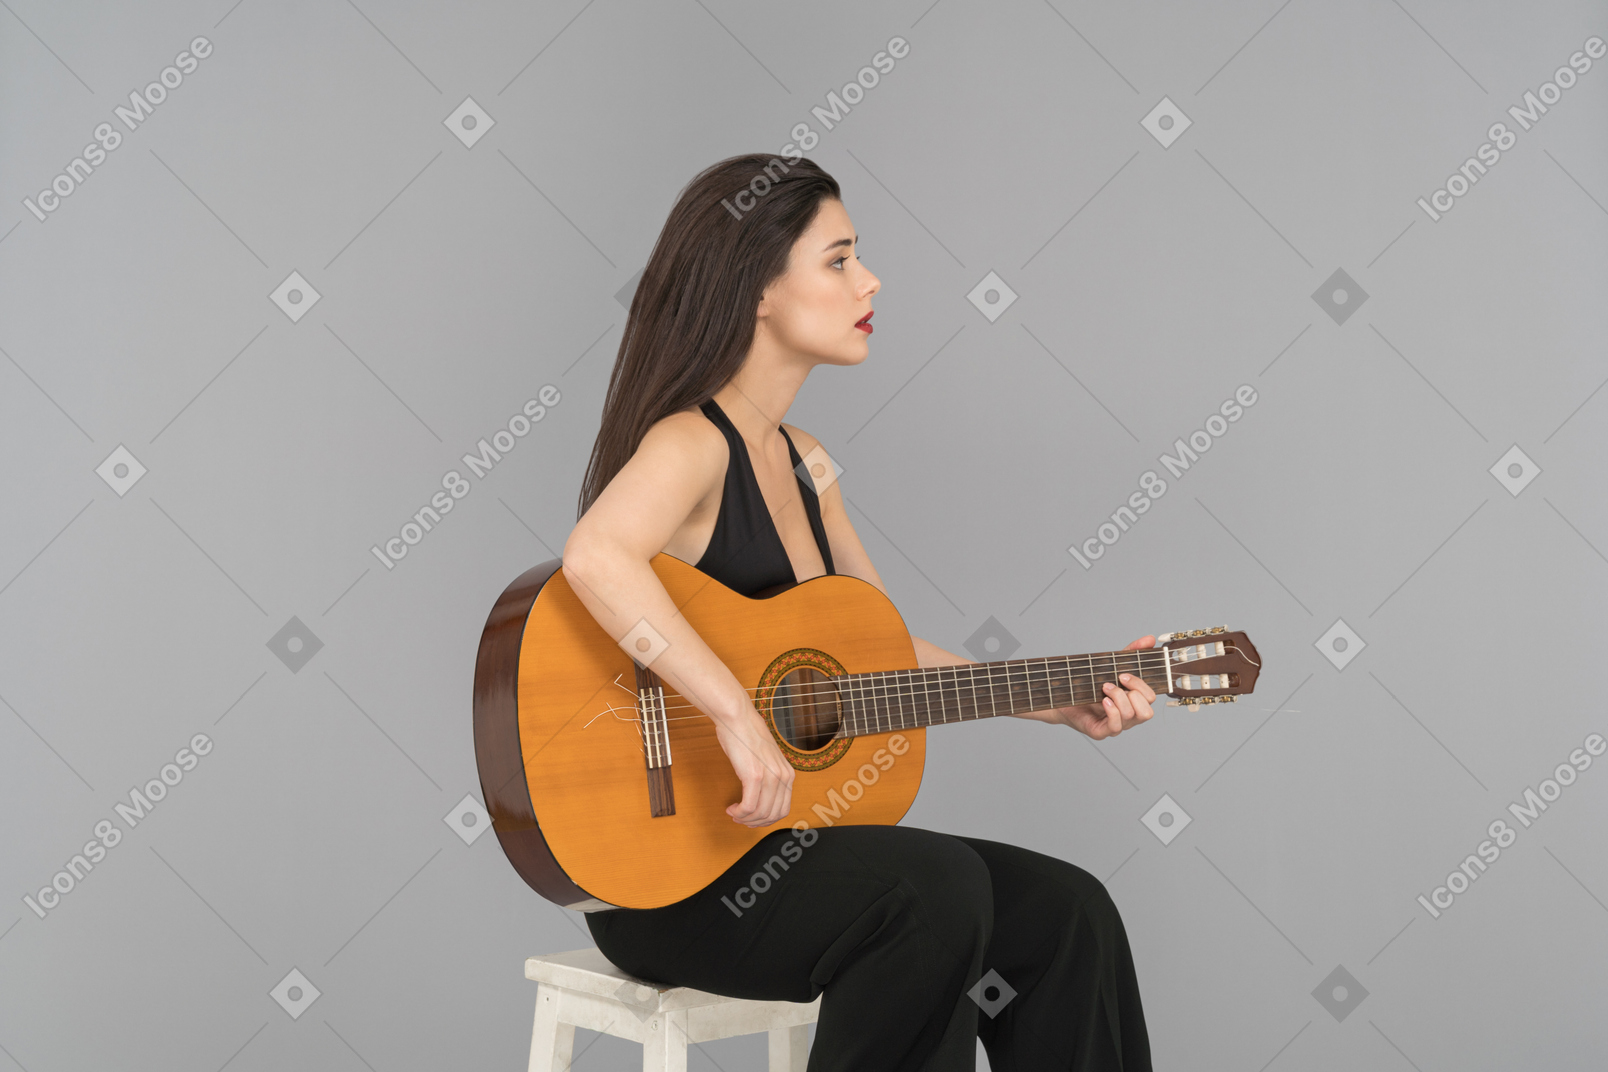 Schöne junge frau, die eine gitarre spielt